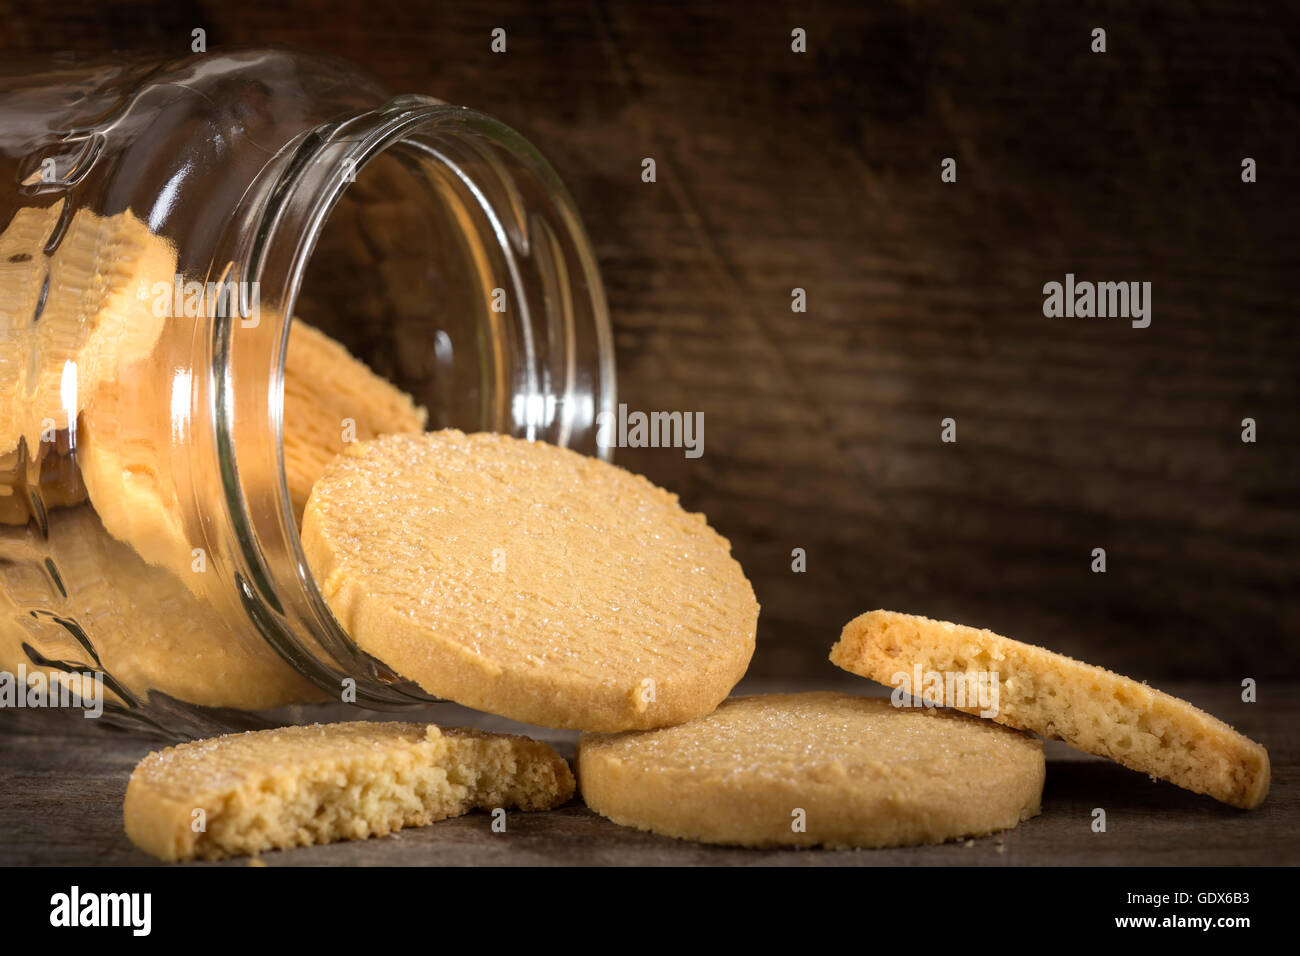 Galletas de mantequilla casera saliendo de un tarro de vidrio sobre una mesa de madera. Foto de stock